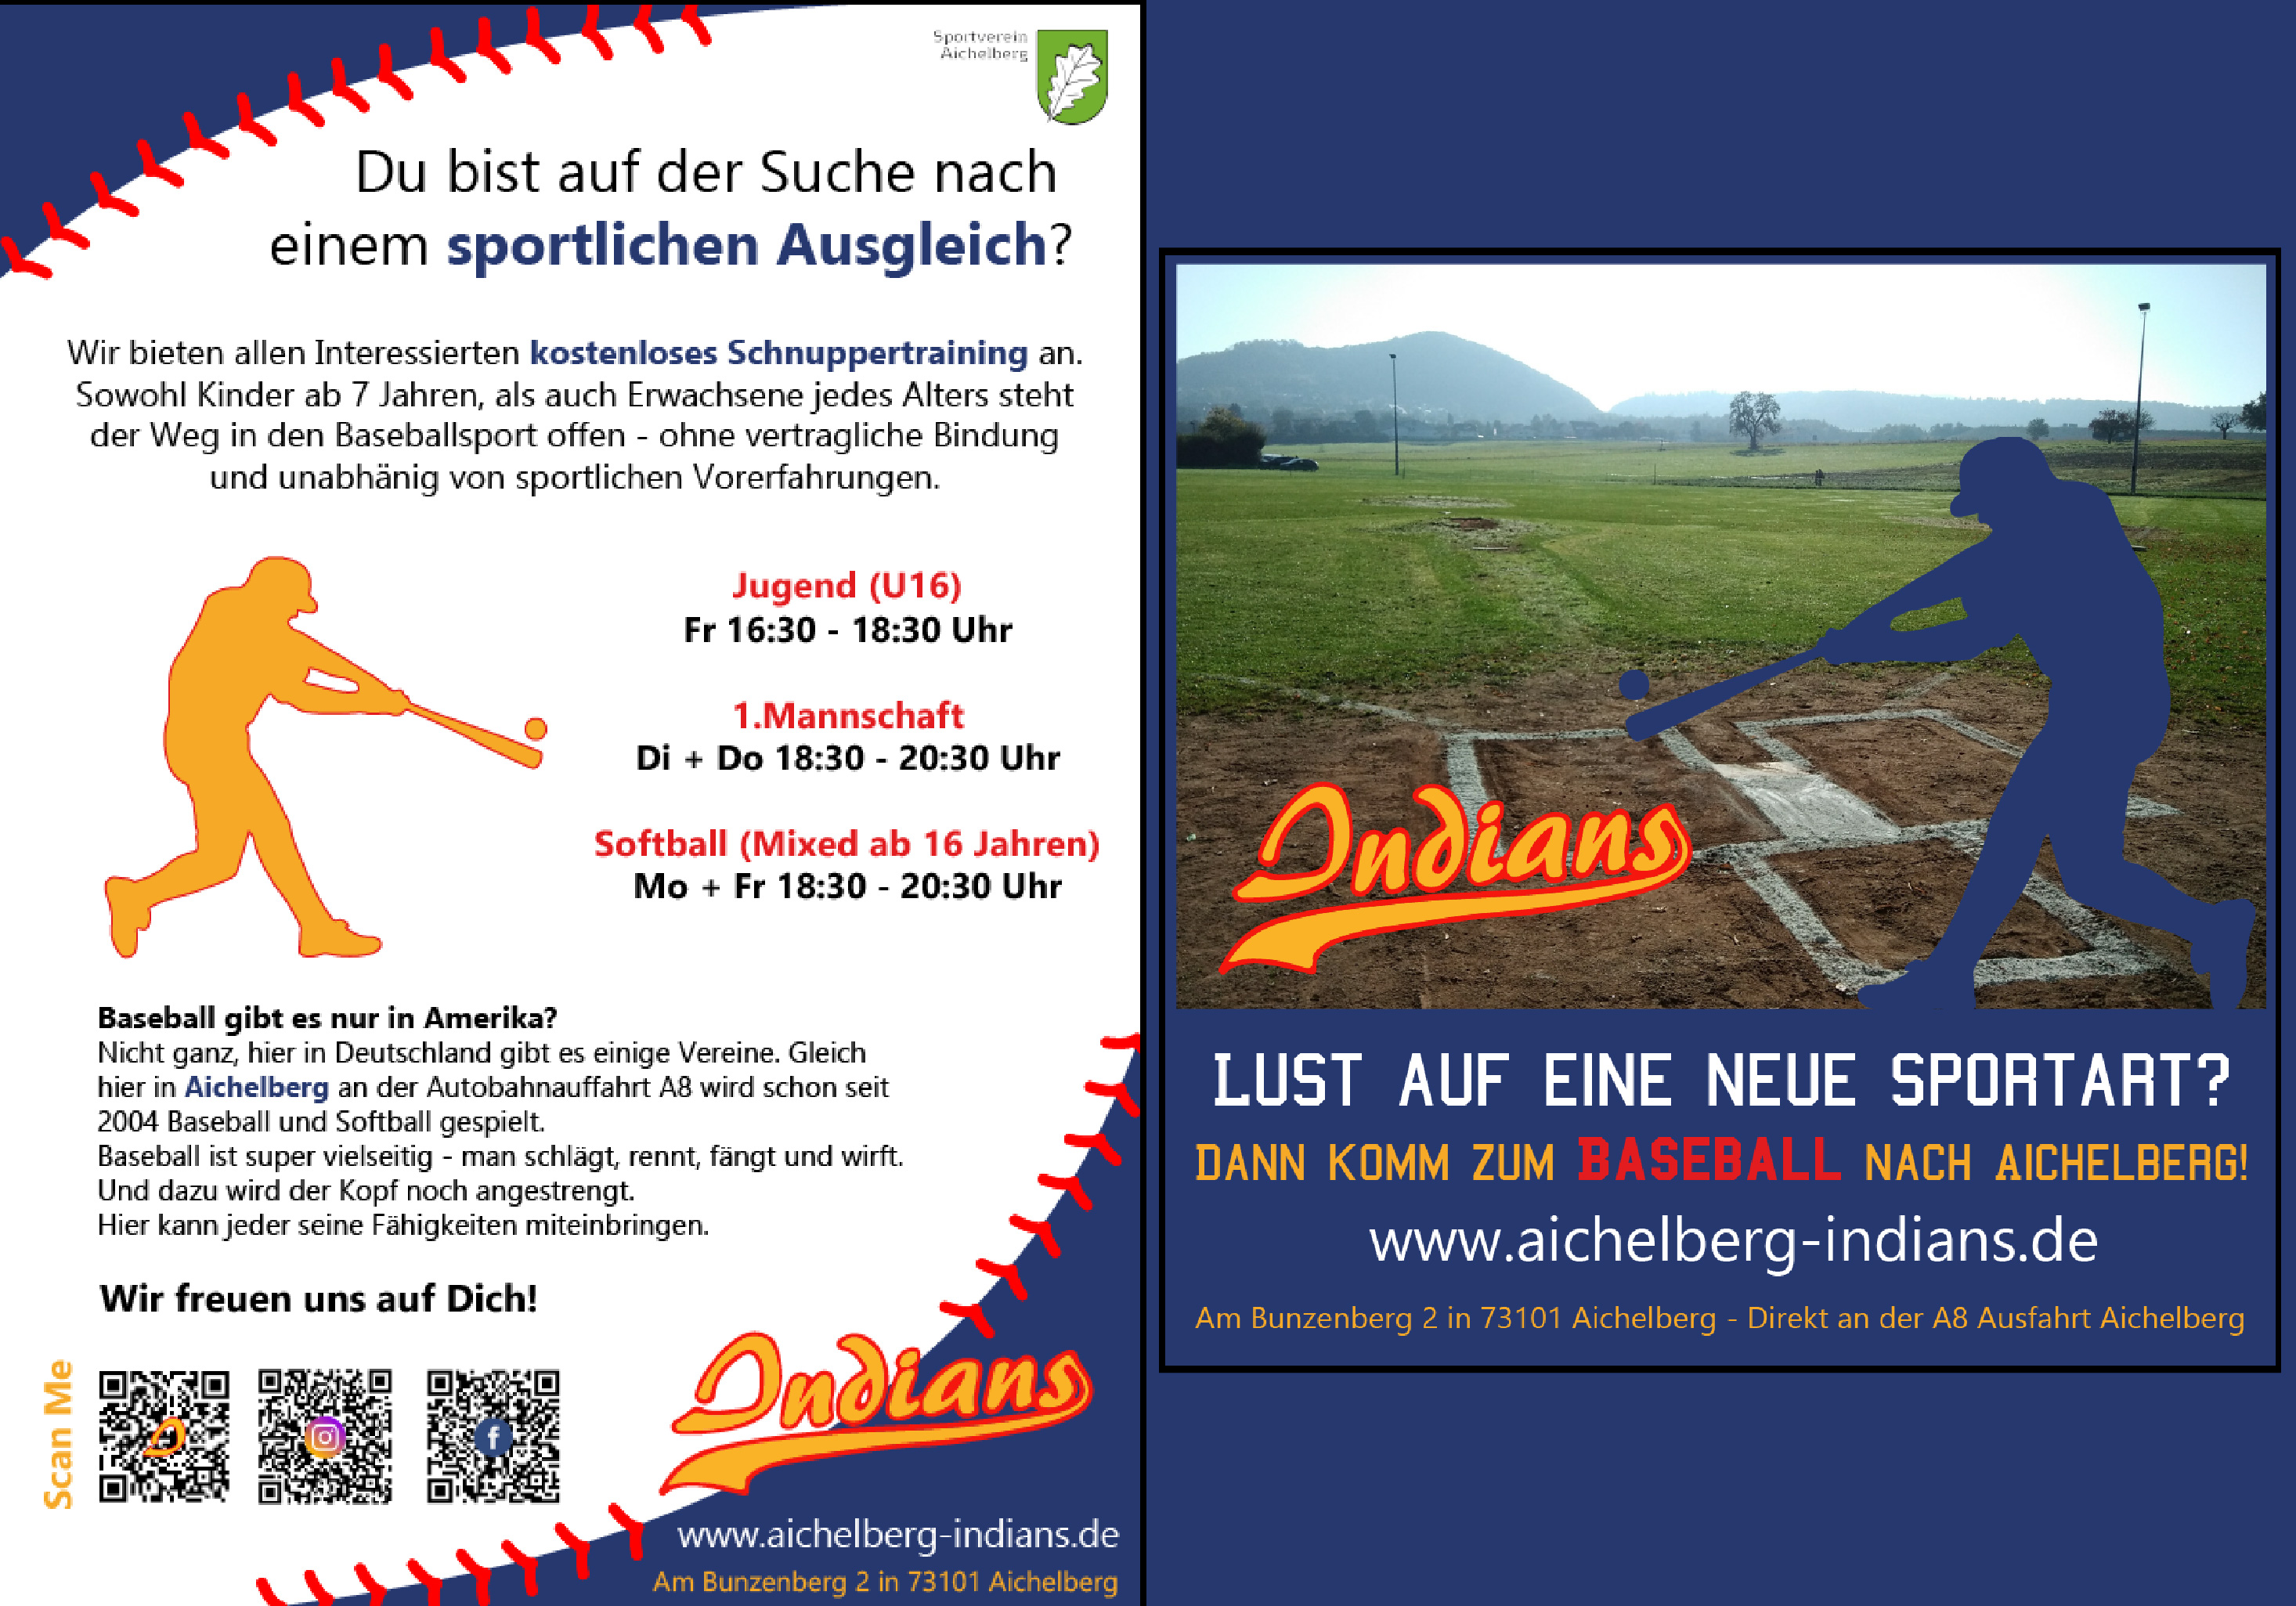 Werbeplakate (print und digital) für den Baseballverein Aichelberg Indians